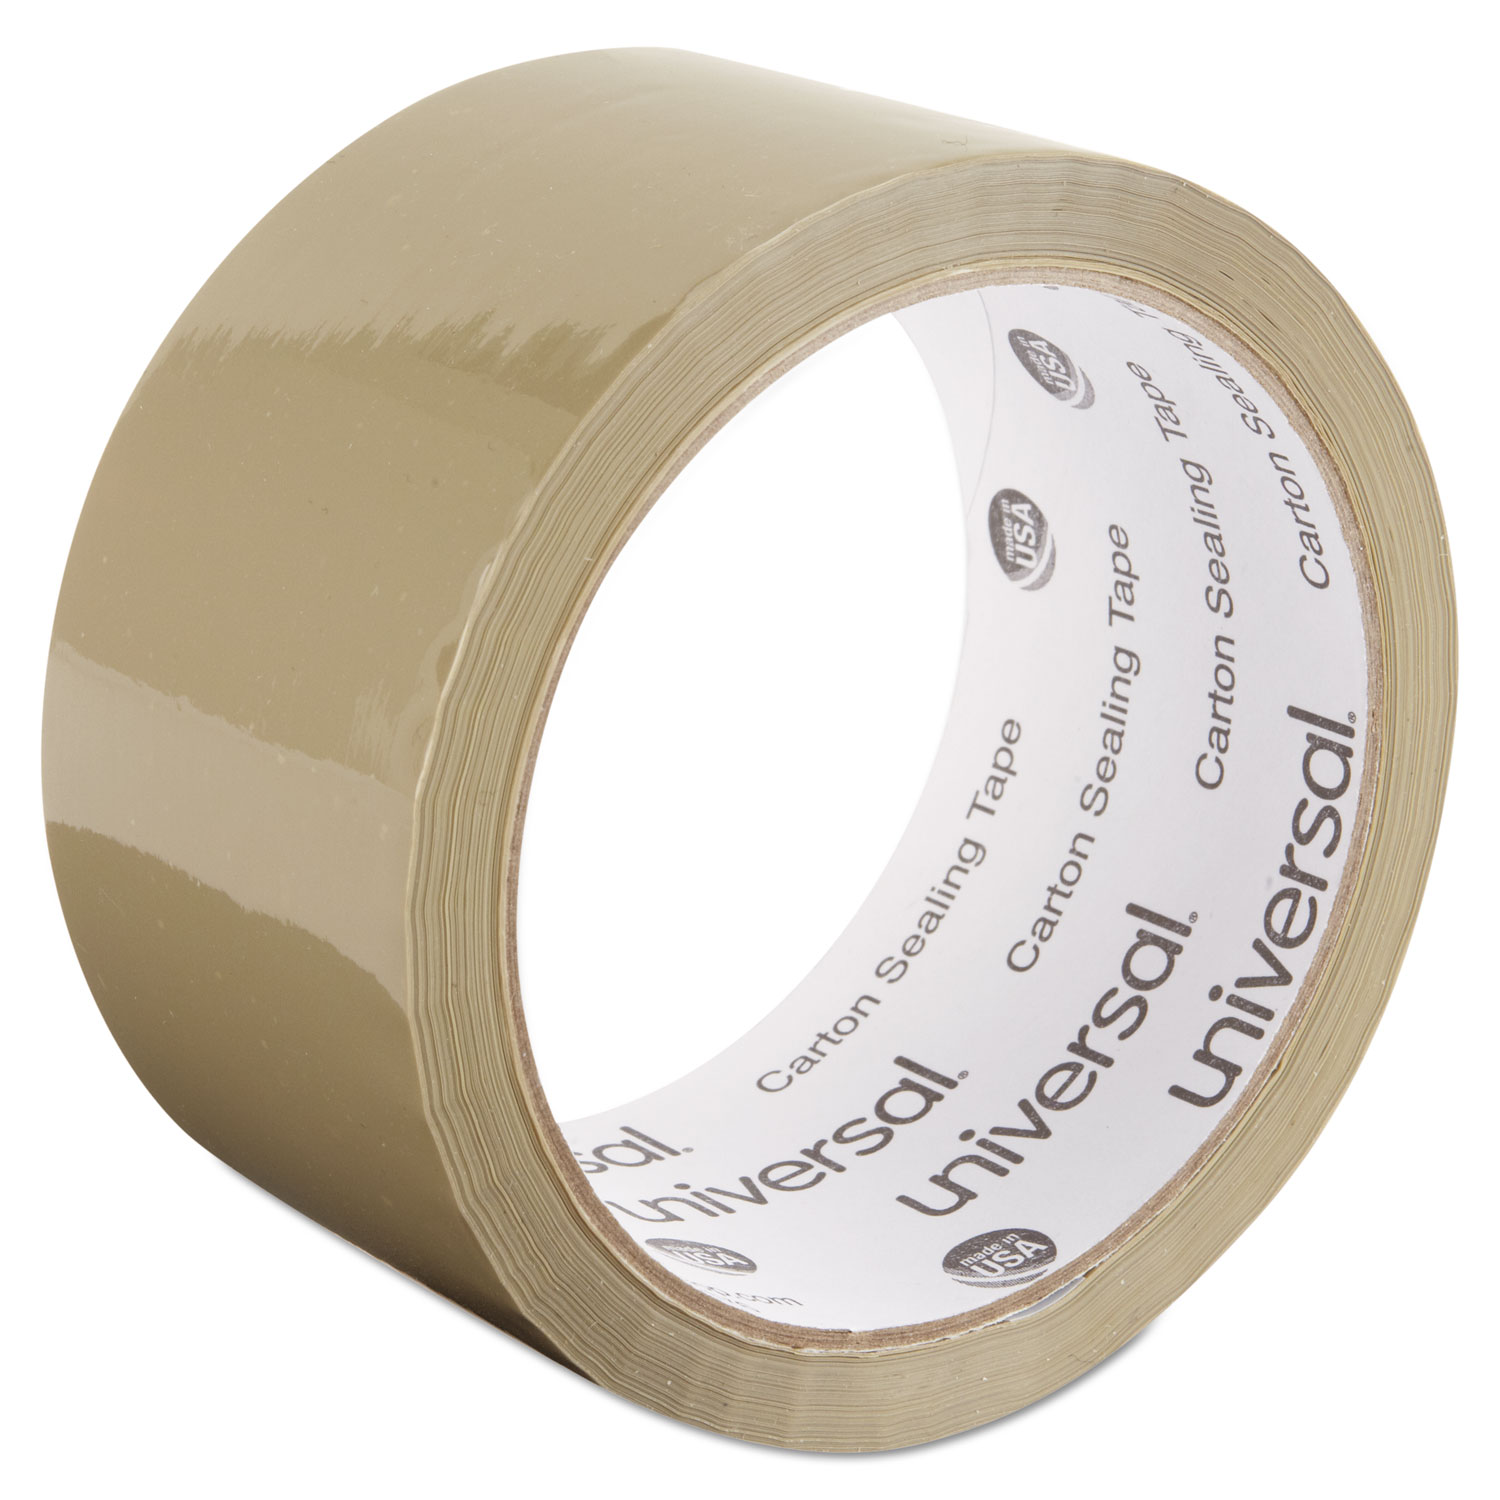 General-Purpose Box Sealing Tape, 48mm x 54.8m, 3 Core, Tan, 6/Pack